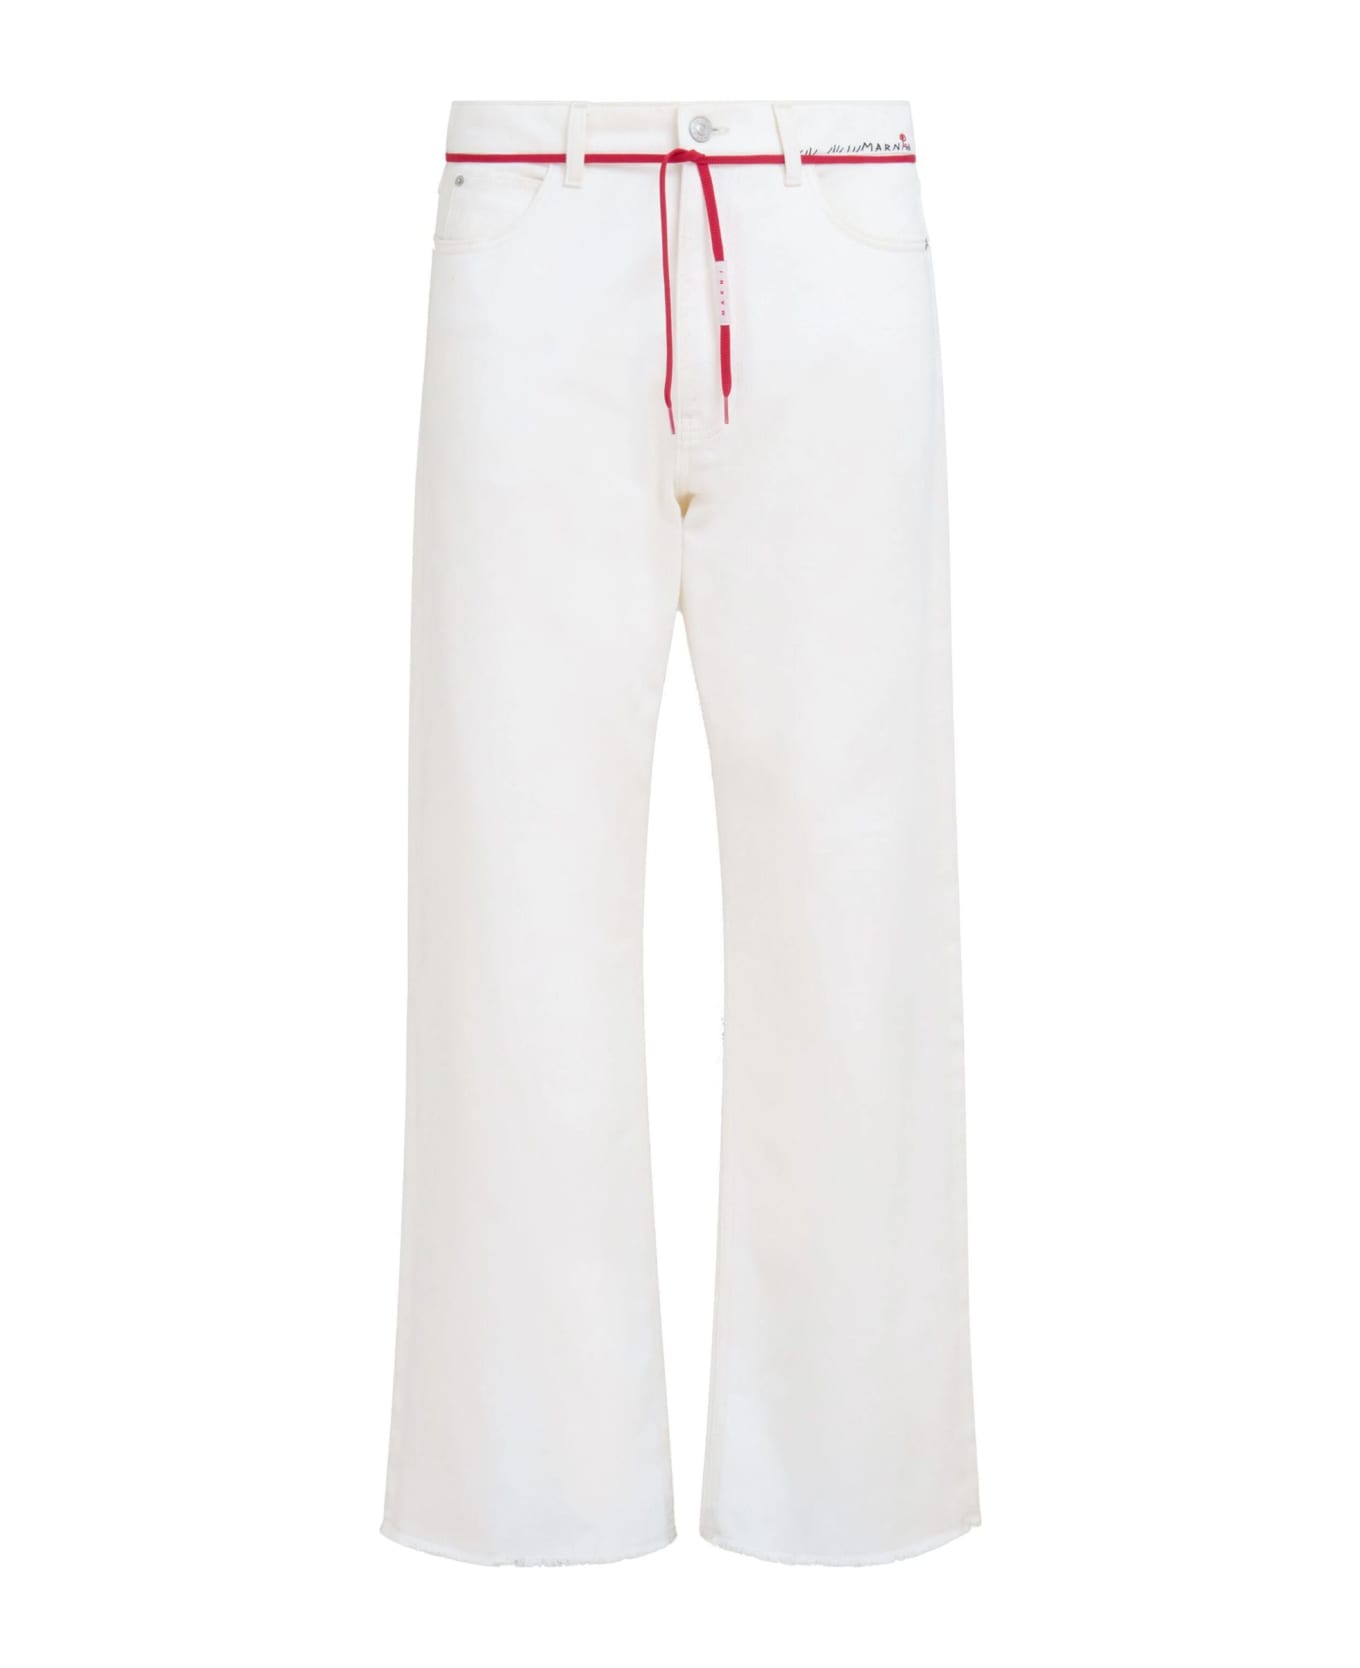 Marni Jeans White - White